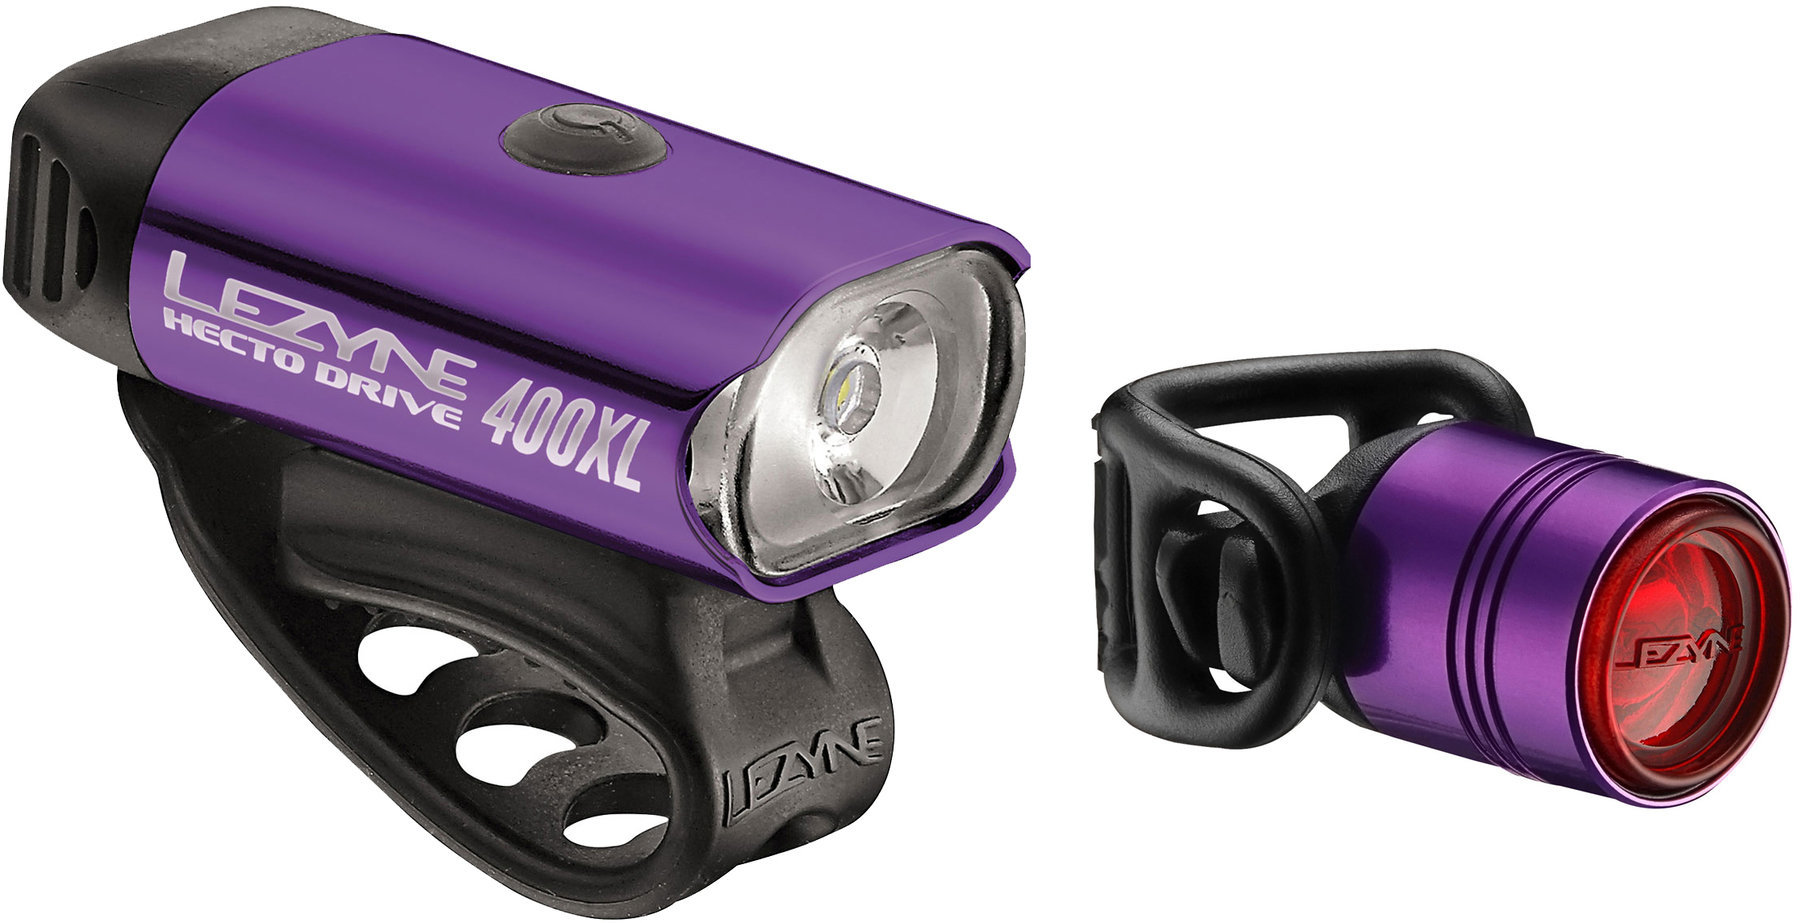 Φώτα Ποδηλάτου Σετ Lezyne Hecto Drive 400Xl / Femto Pair Purple